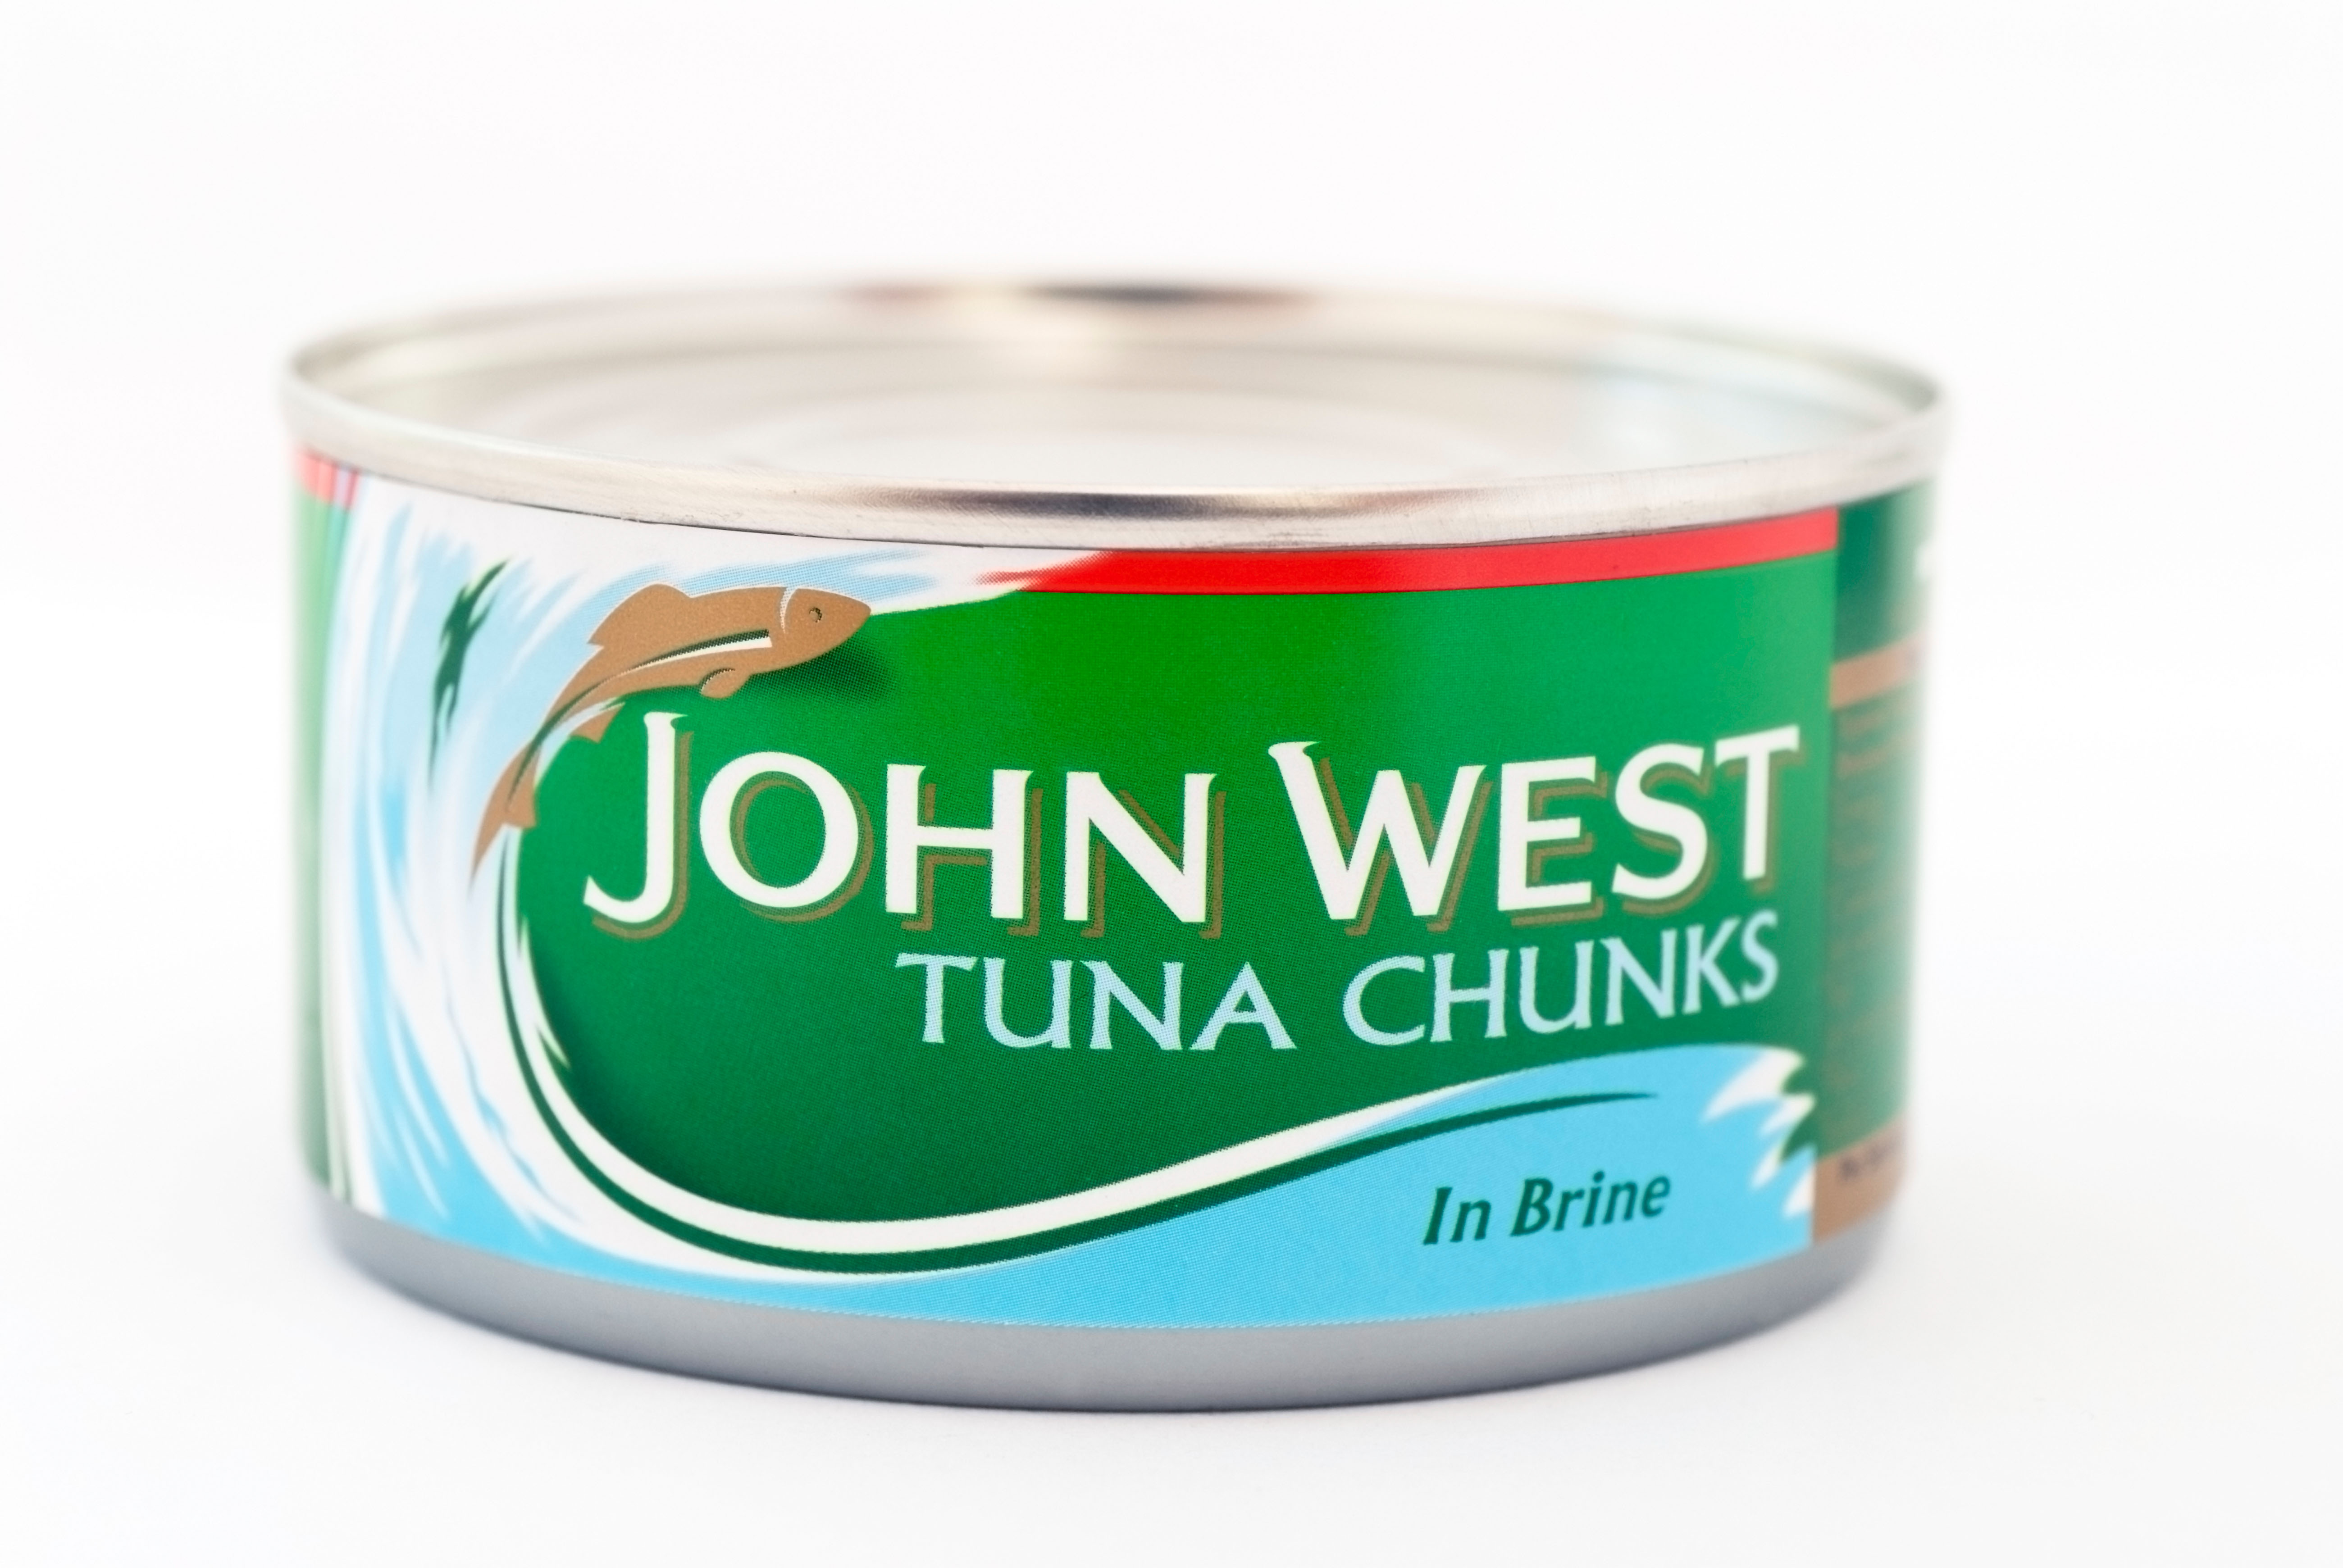 Thai Union Frozen besitzt die beliebte Marke John West